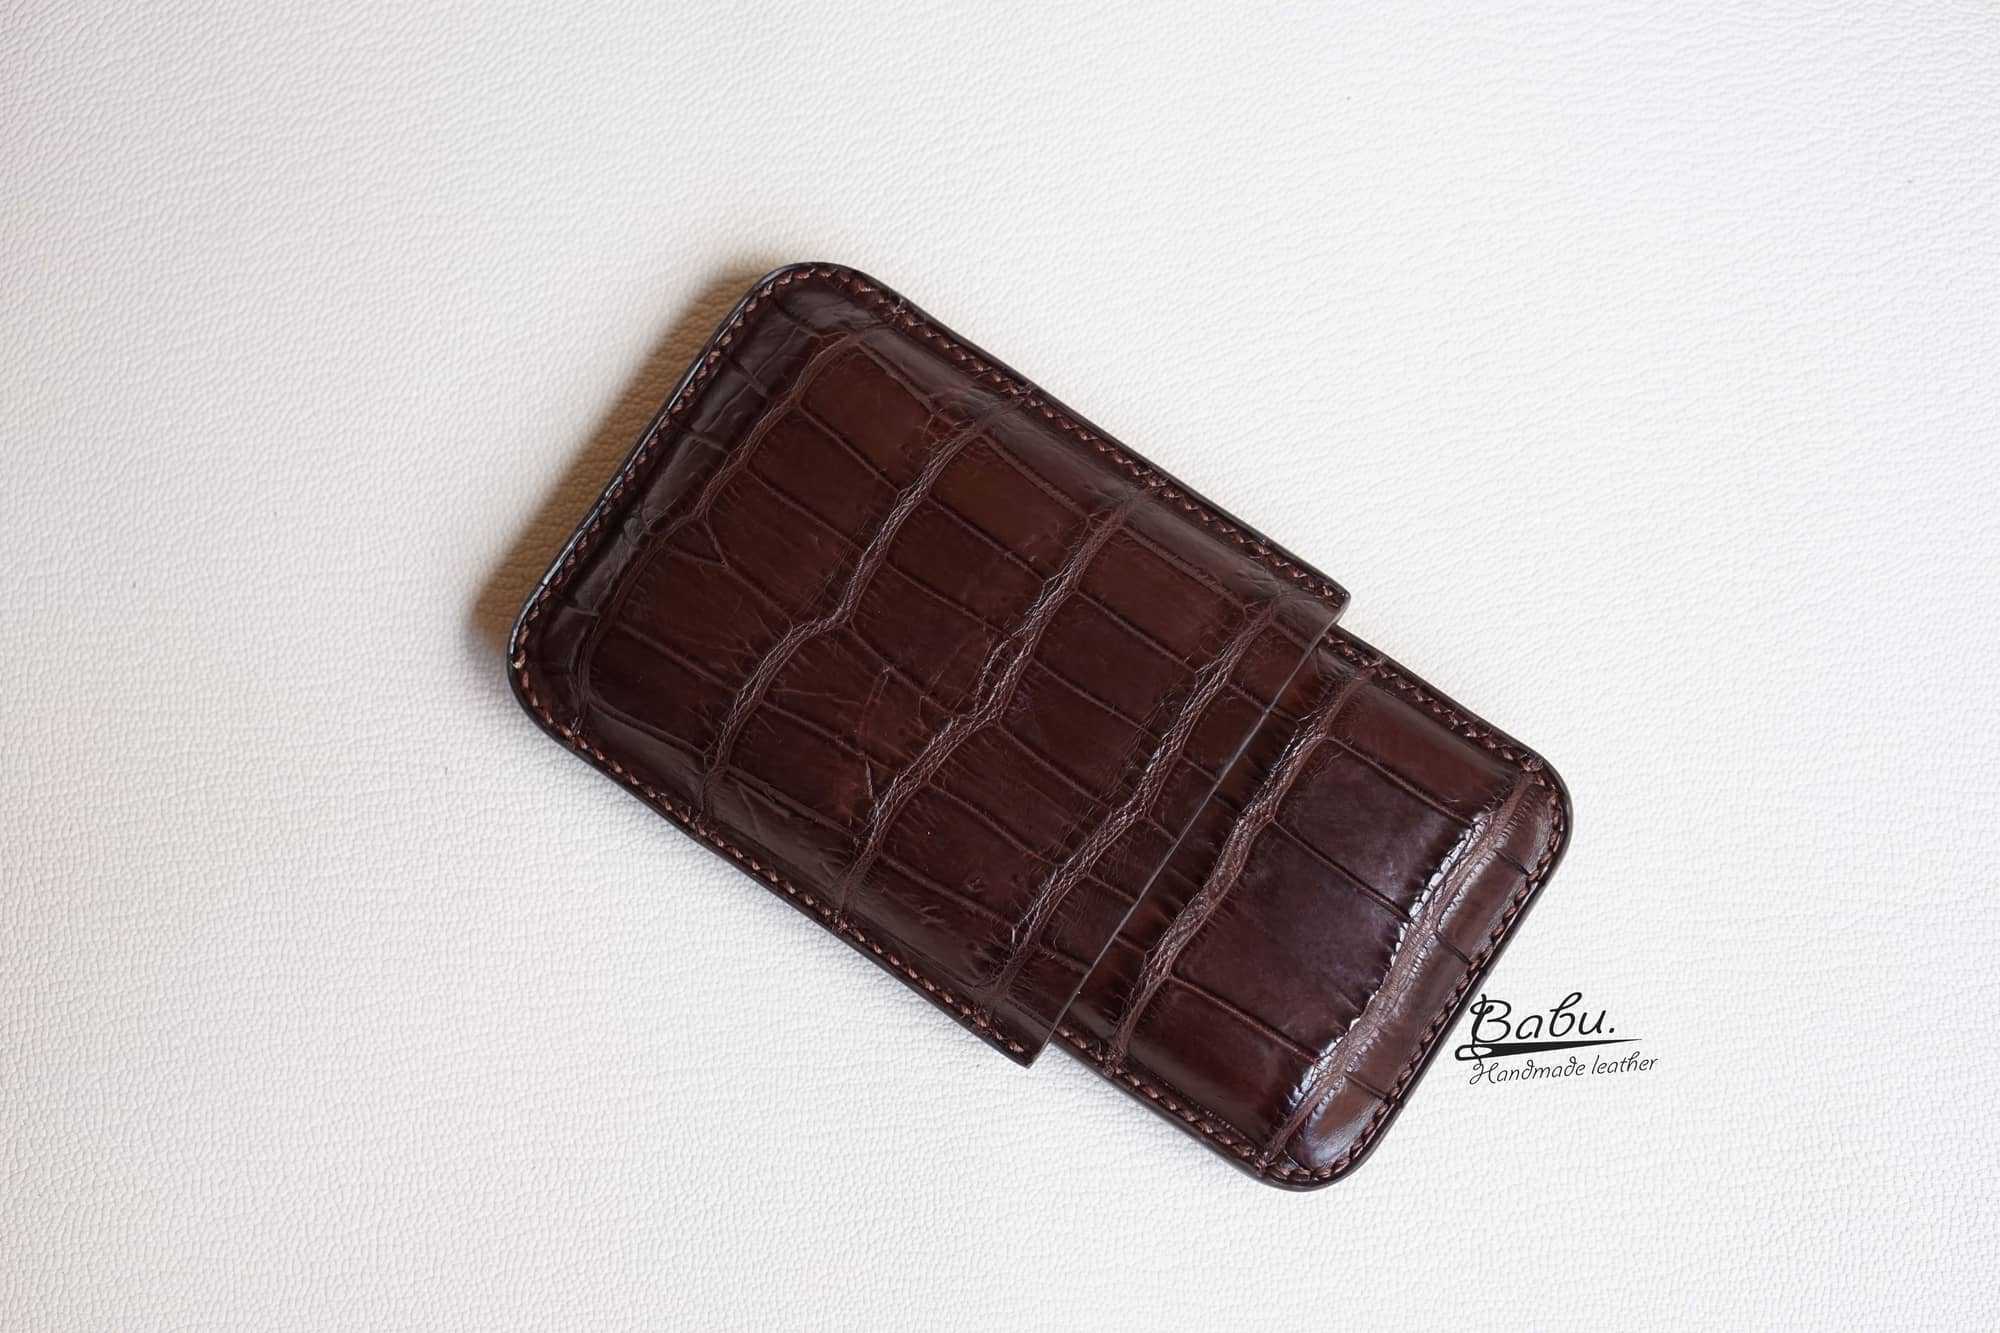 Genuine Leather Cigar Case for LAGUITO No. 1 cigar - … - Gem